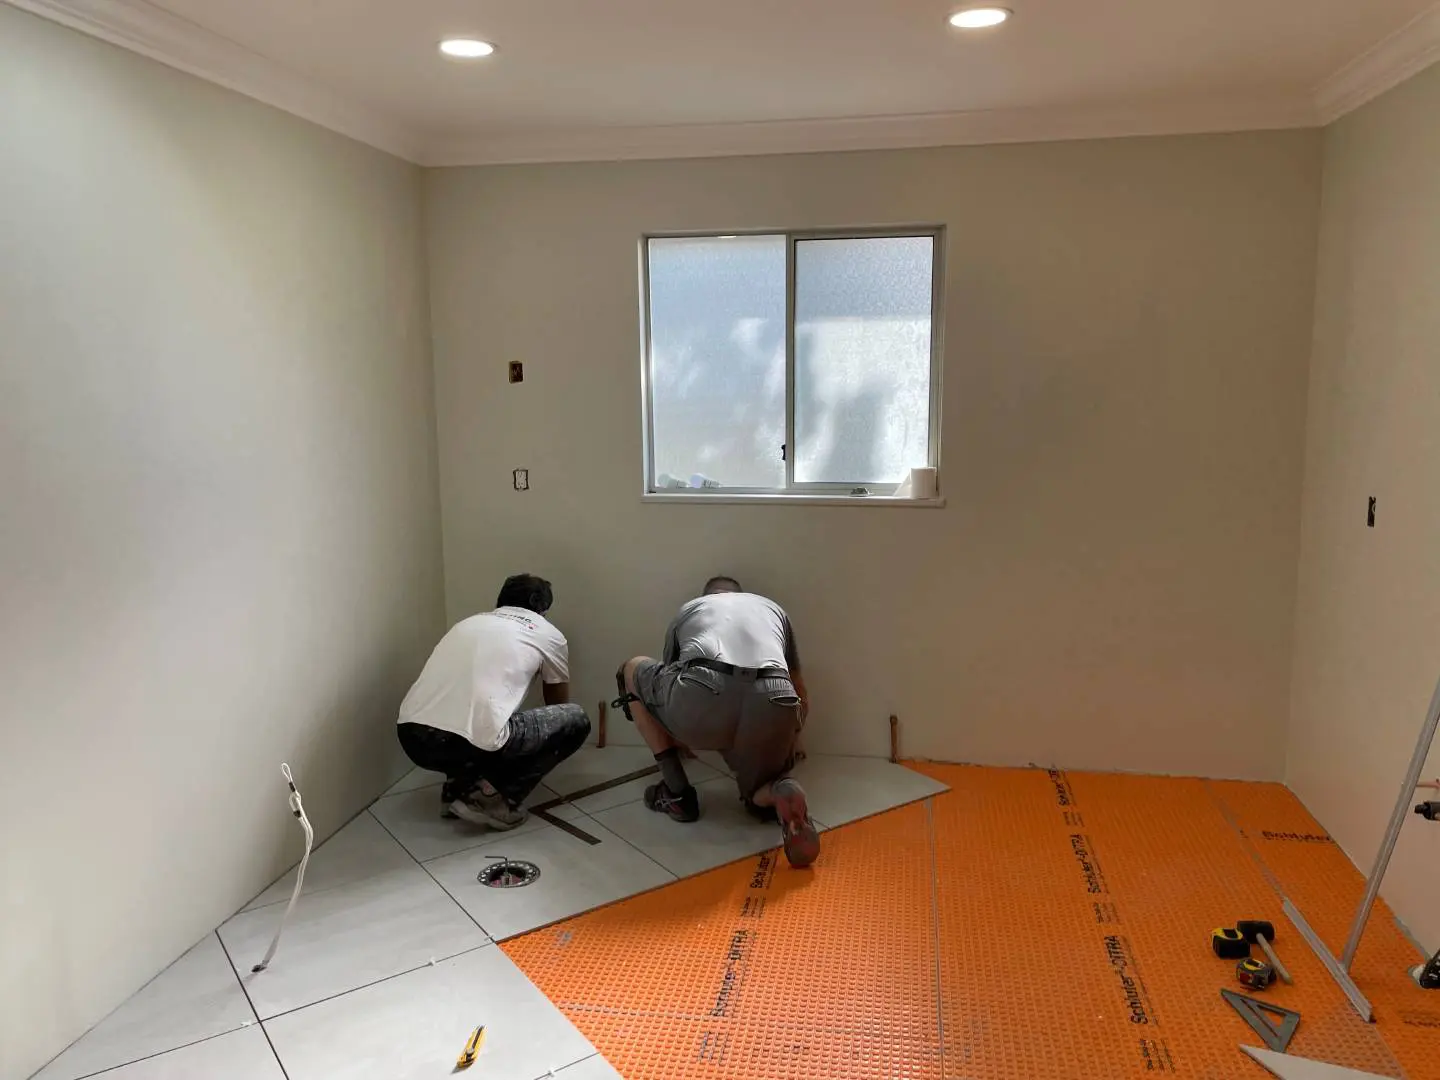 A Bathroom Flooring Under Progress